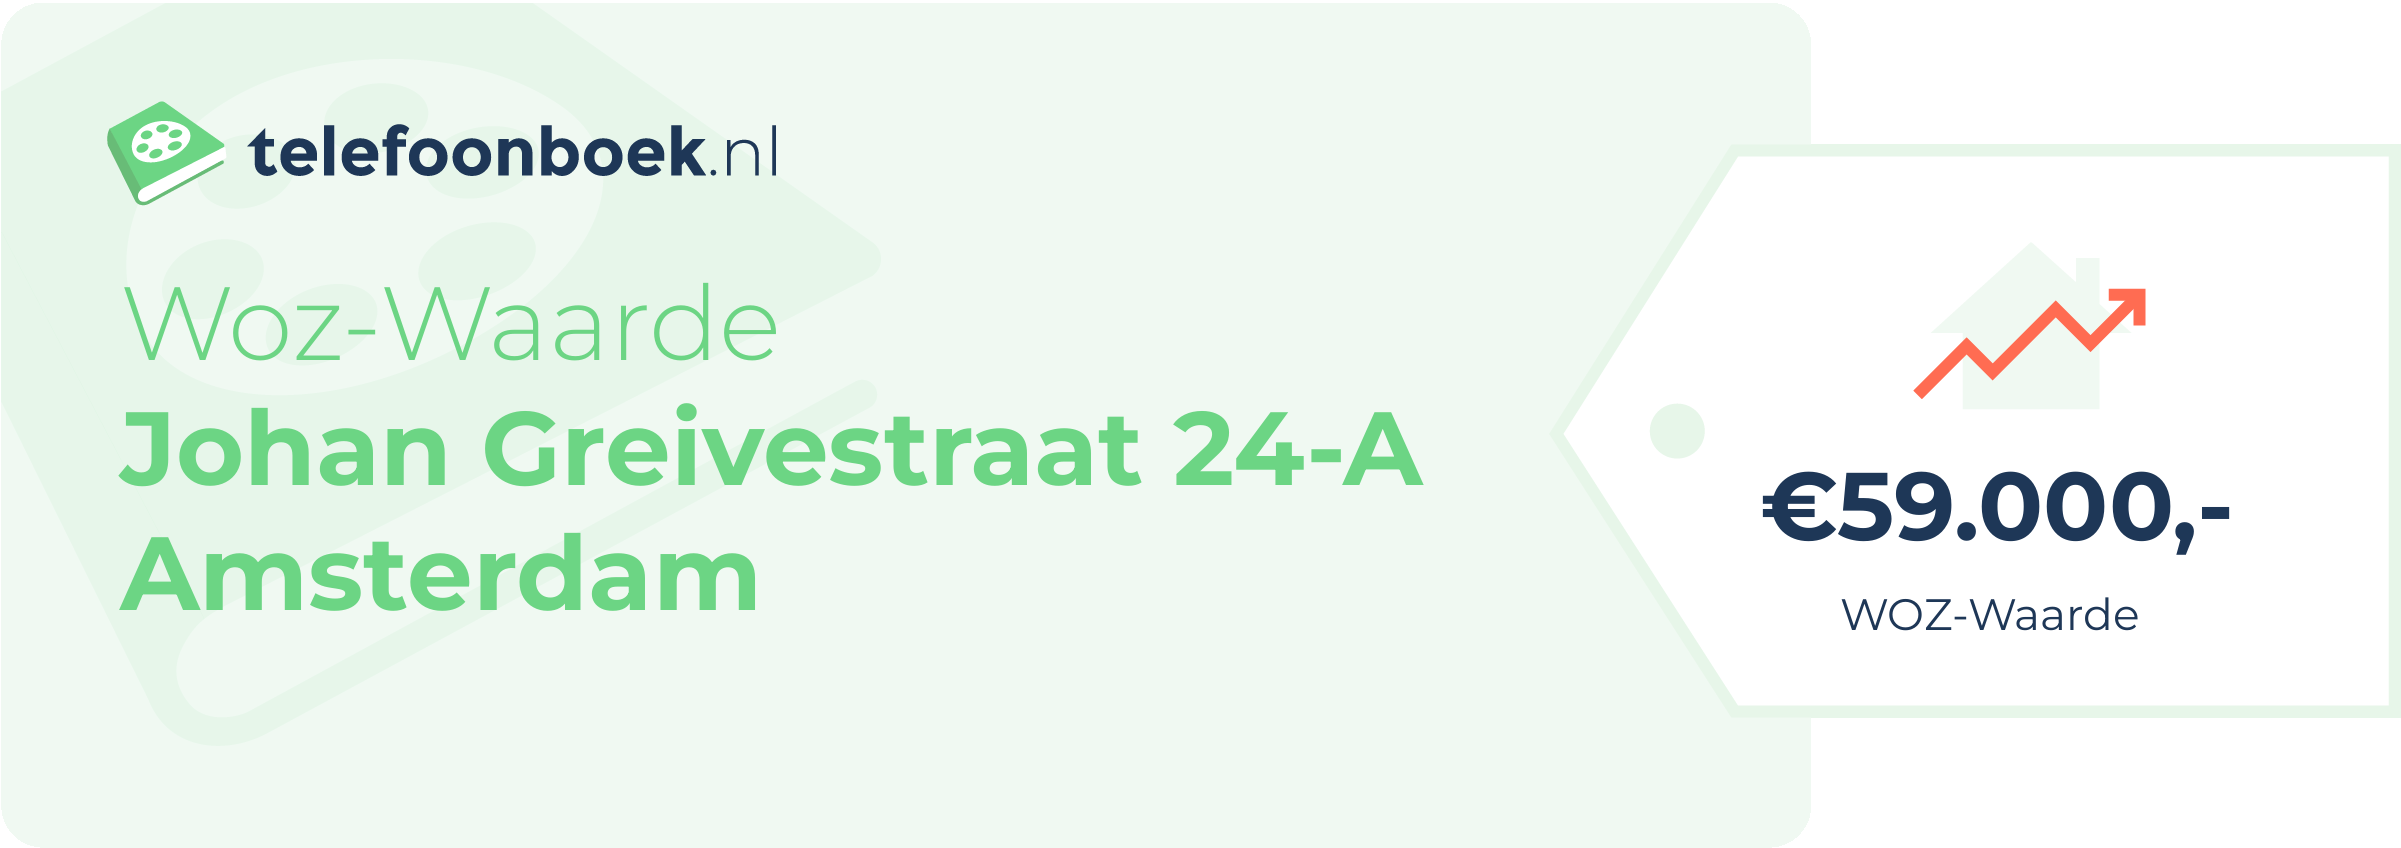 WOZ-waarde Johan Greivestraat 24-A Amsterdam